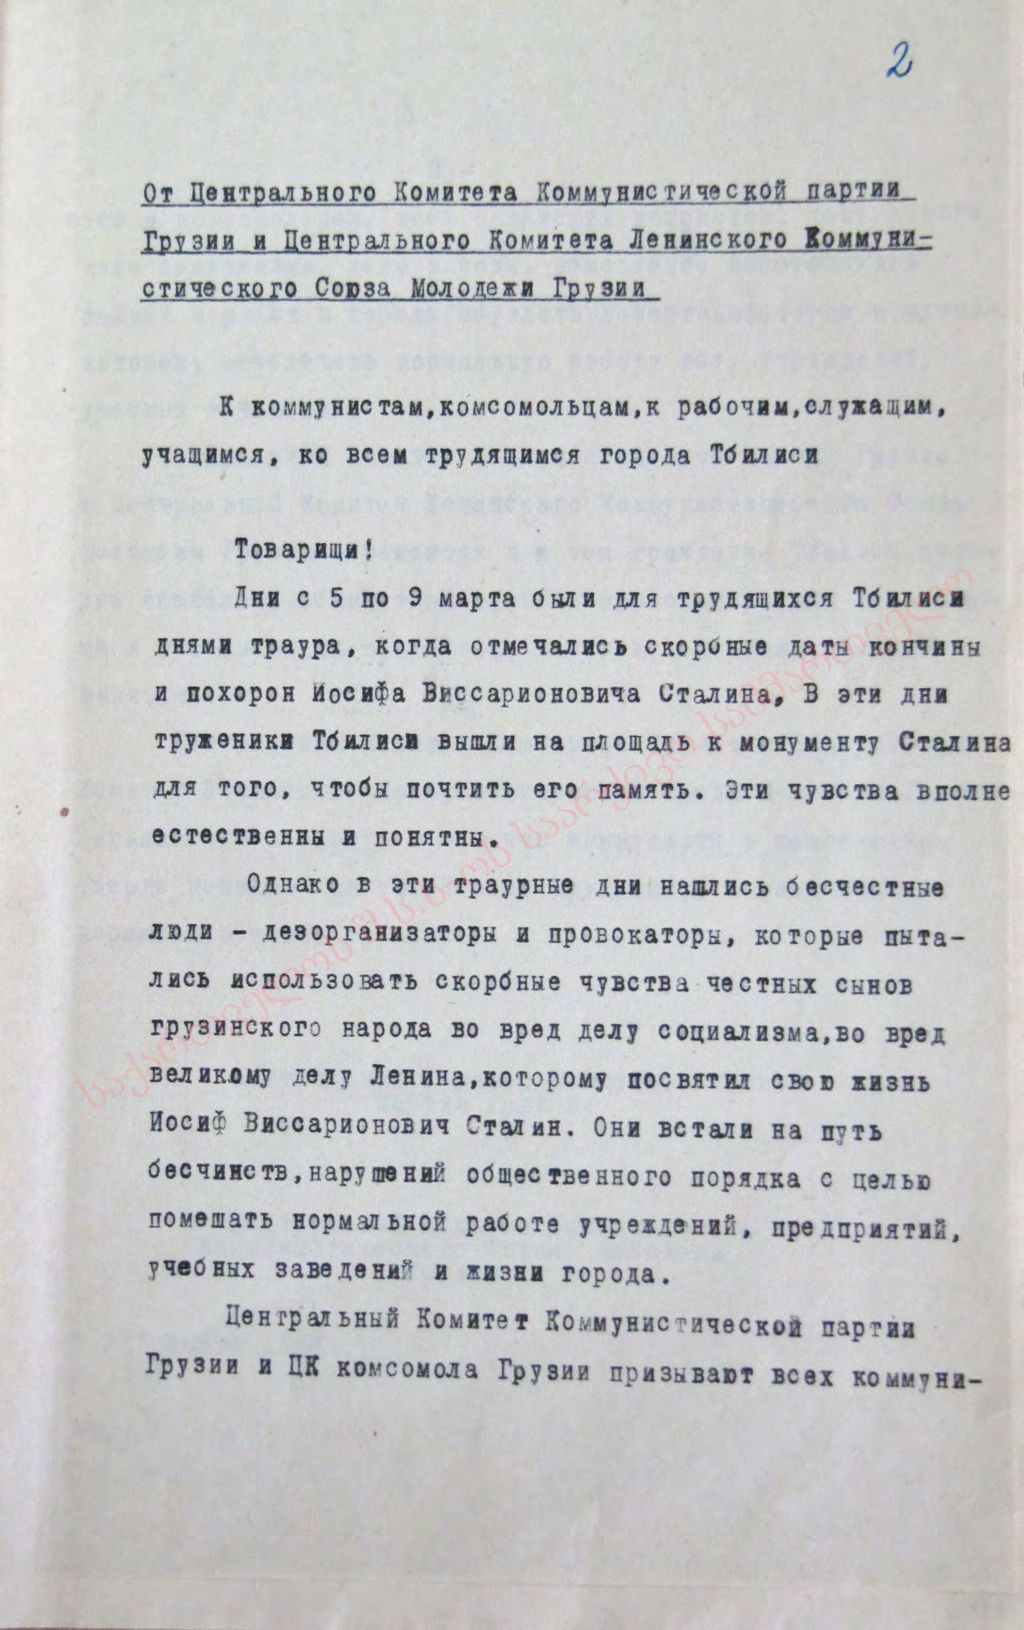 Обращение ЦК КП и ЦК ЛКСМ Грузии к гражданам от 9 марта 1956 г.